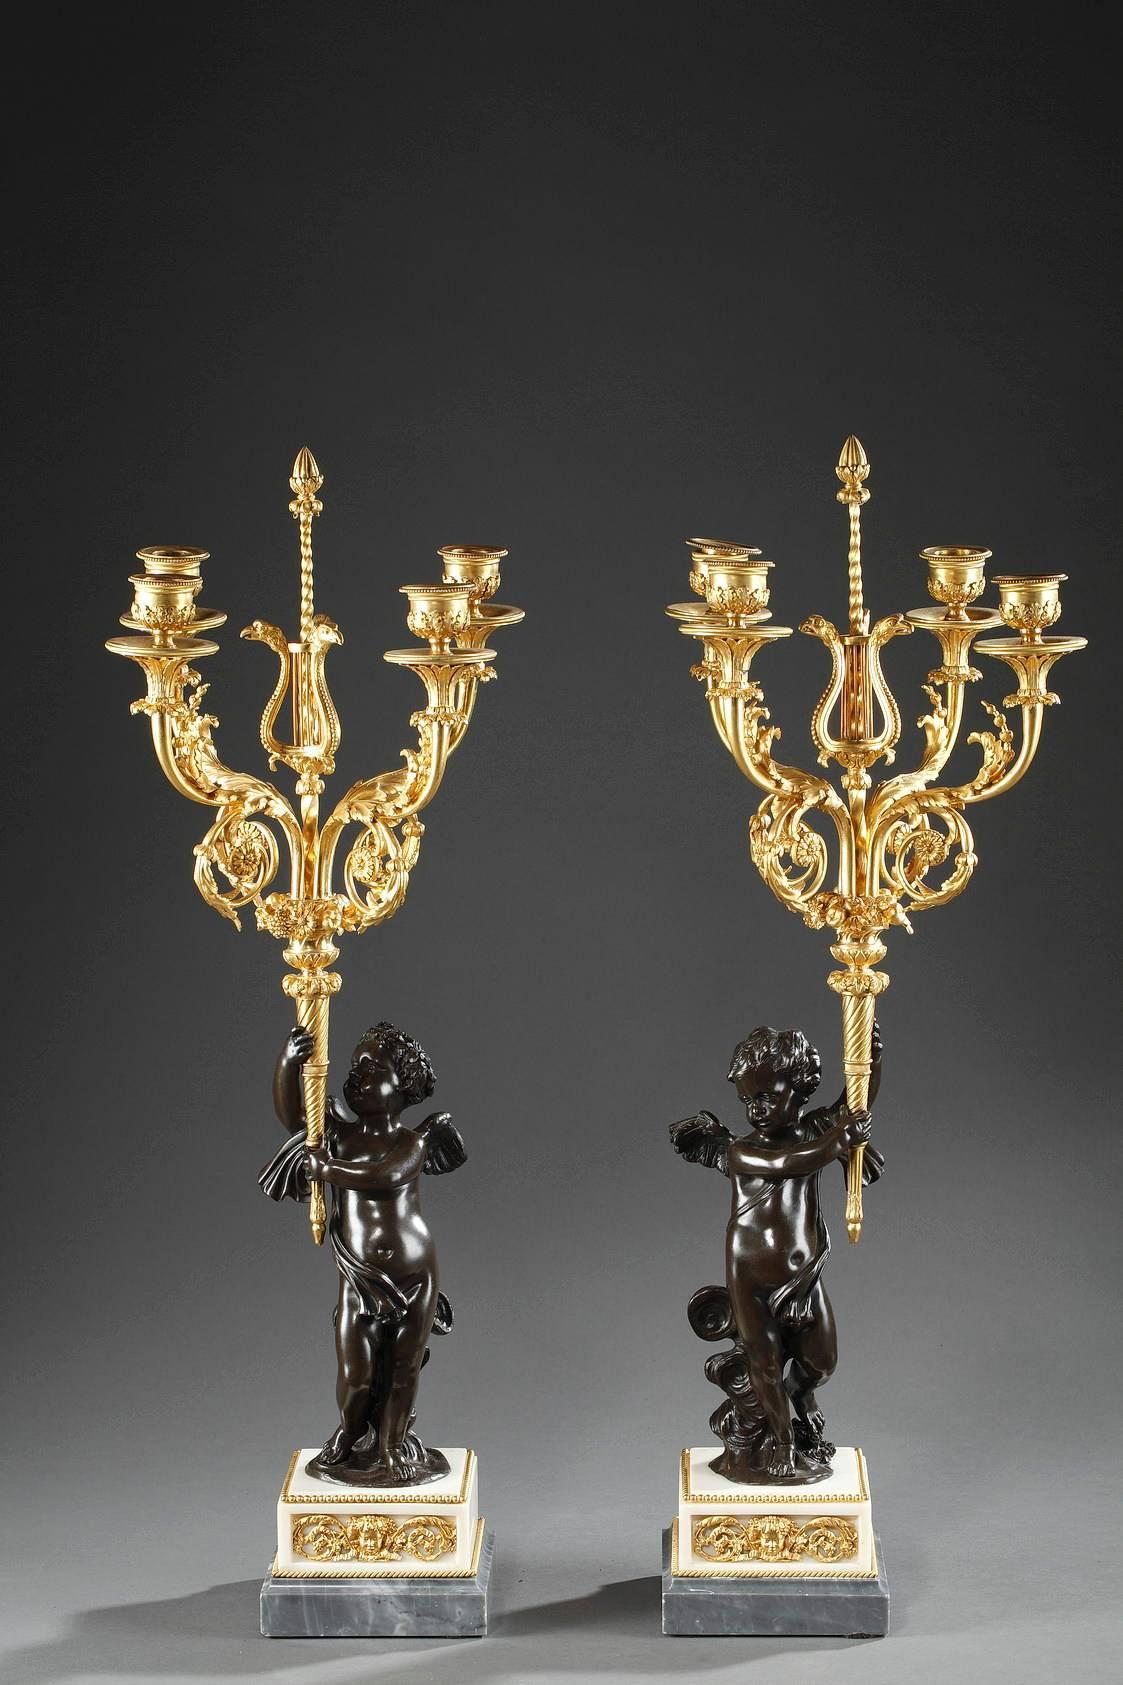 Exquisites Kandelaberpaar, bestehend aus einem jungen Amor auf Wolken aus patinierter Bronze, der eine Fackel aus Ormolu hält. Eine Vase mit Blumen und Früchten steht dort, wo die Flamme der Fackel wäre, und vier Leuchterarme ragen aus der Vase